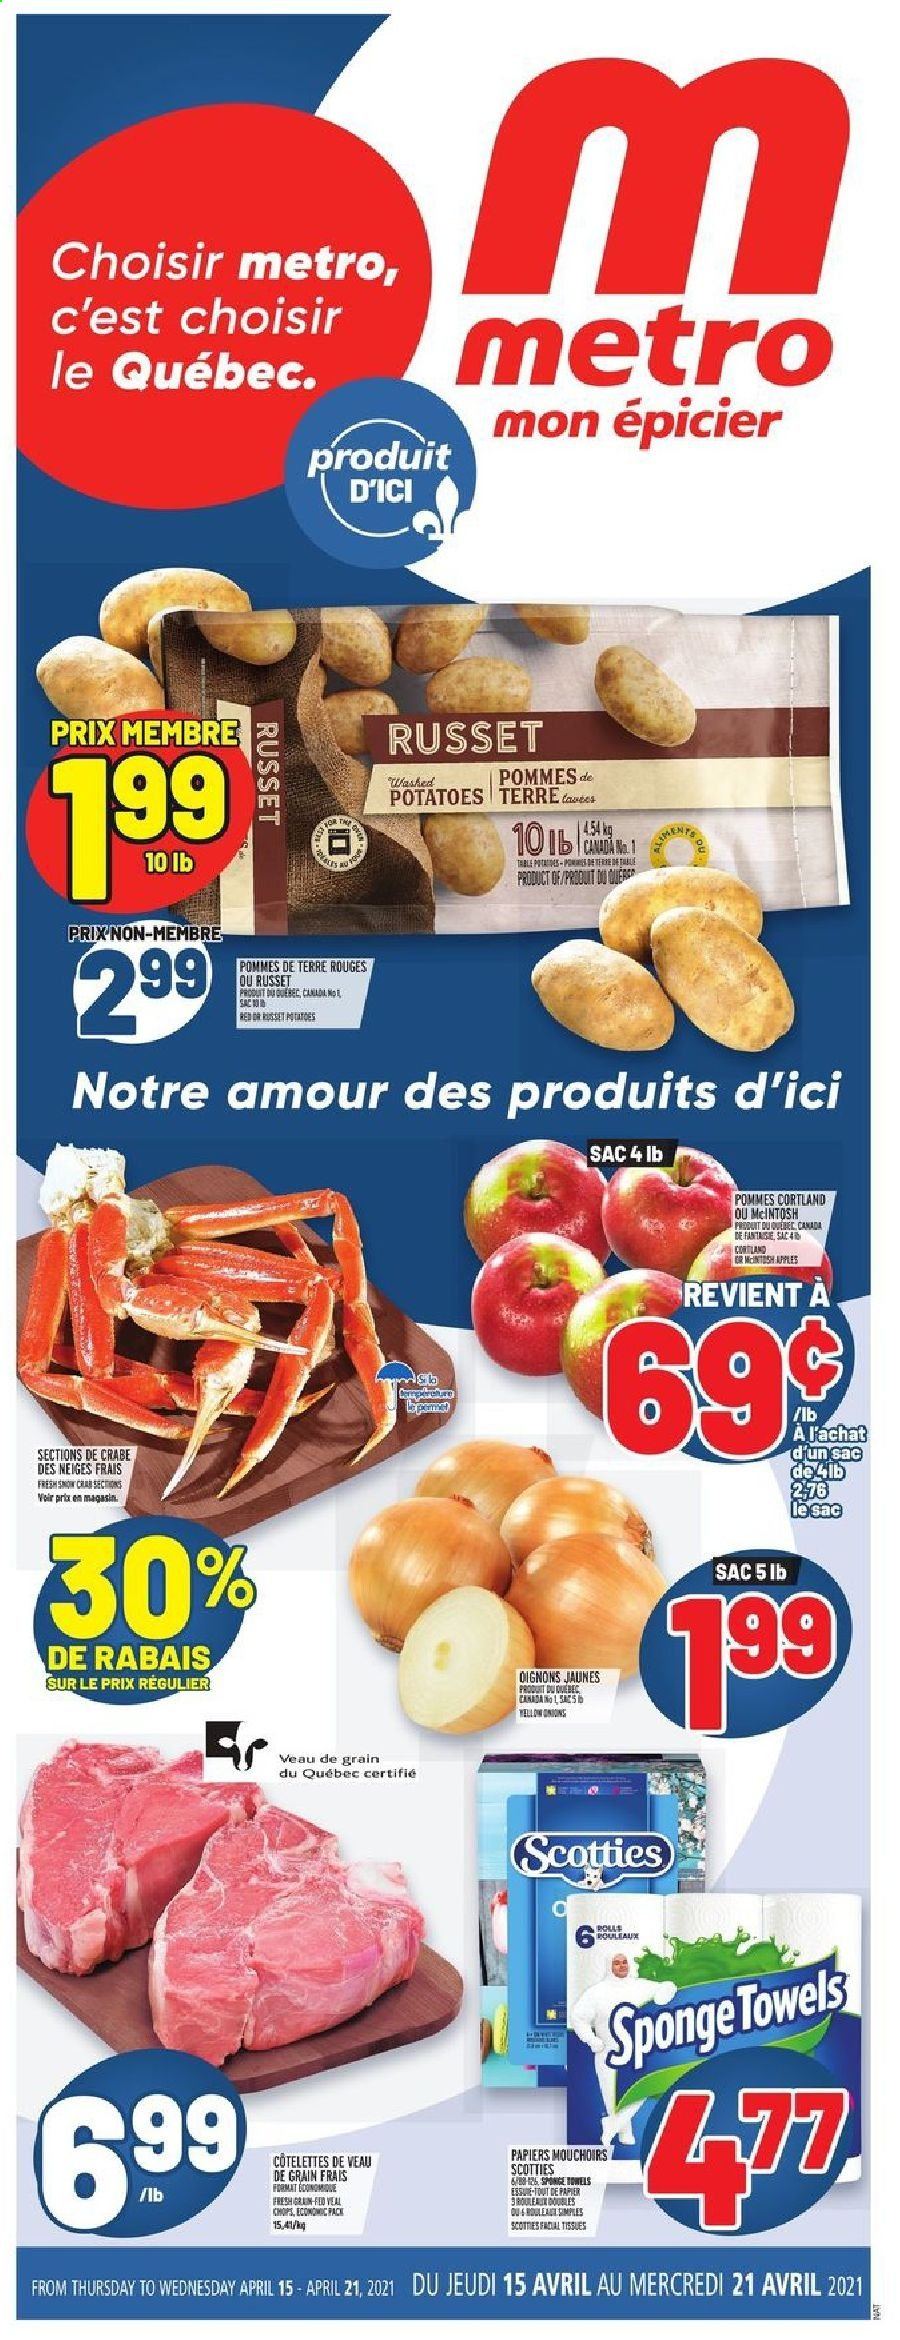 thumbnail - Circulaire Metro - 15 Avril 2021 - 21 Avril 2021 - Produits soldés - oignons, pommes de terre, viande de veau, crabe, mouchoirs. Page 1.